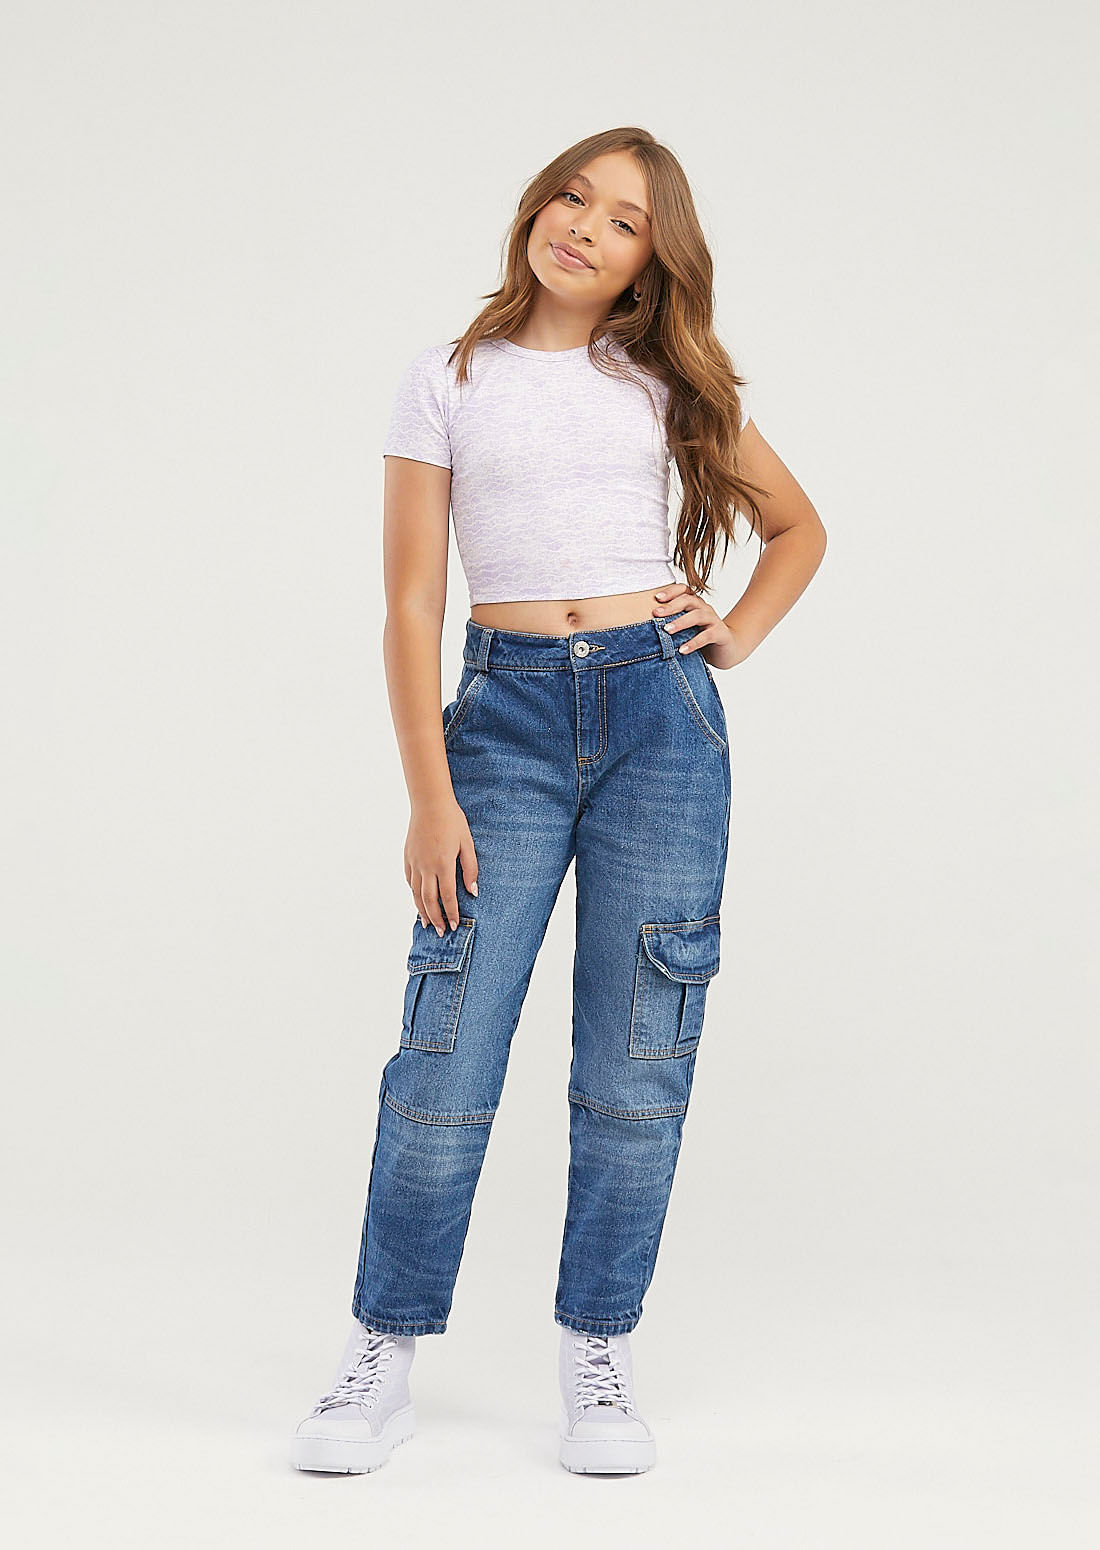 Ropa y jeans para niñas y adolescentes